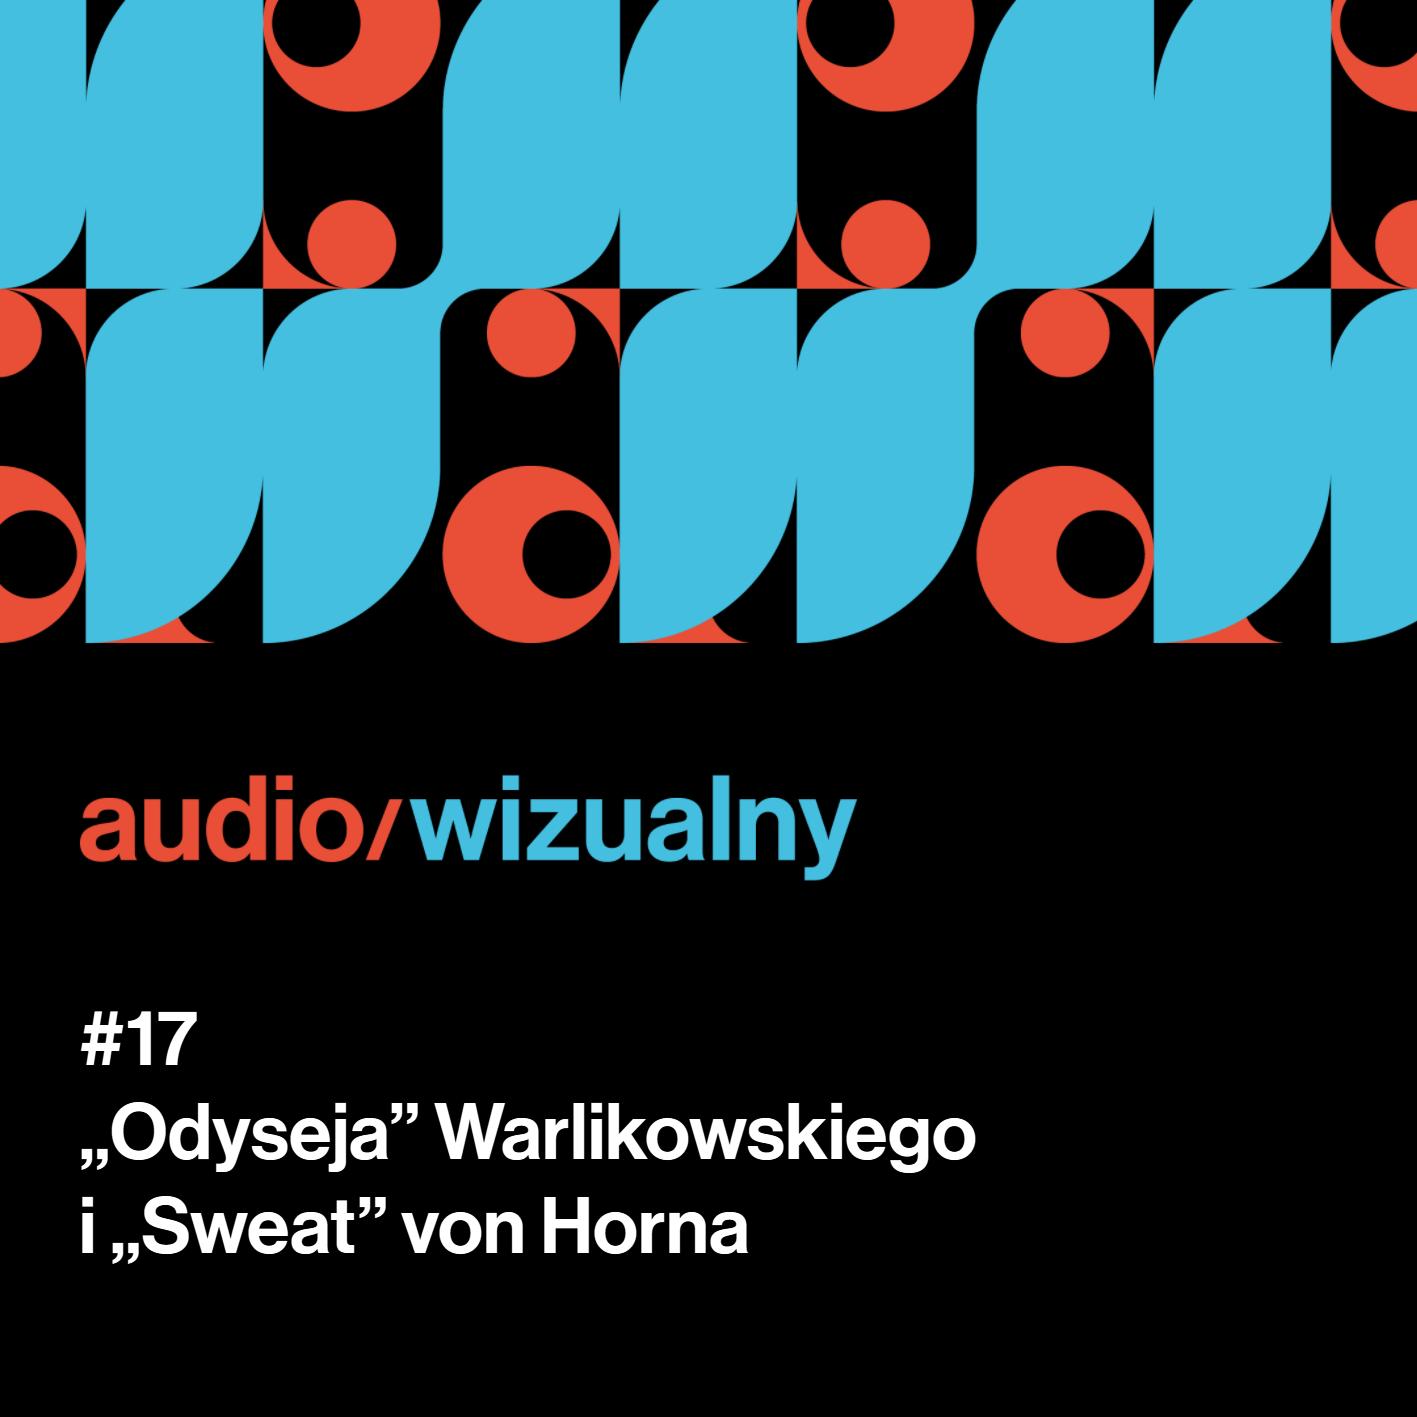 #17 "Odyseja" Warlikowskiego i "Sweat" von Horna